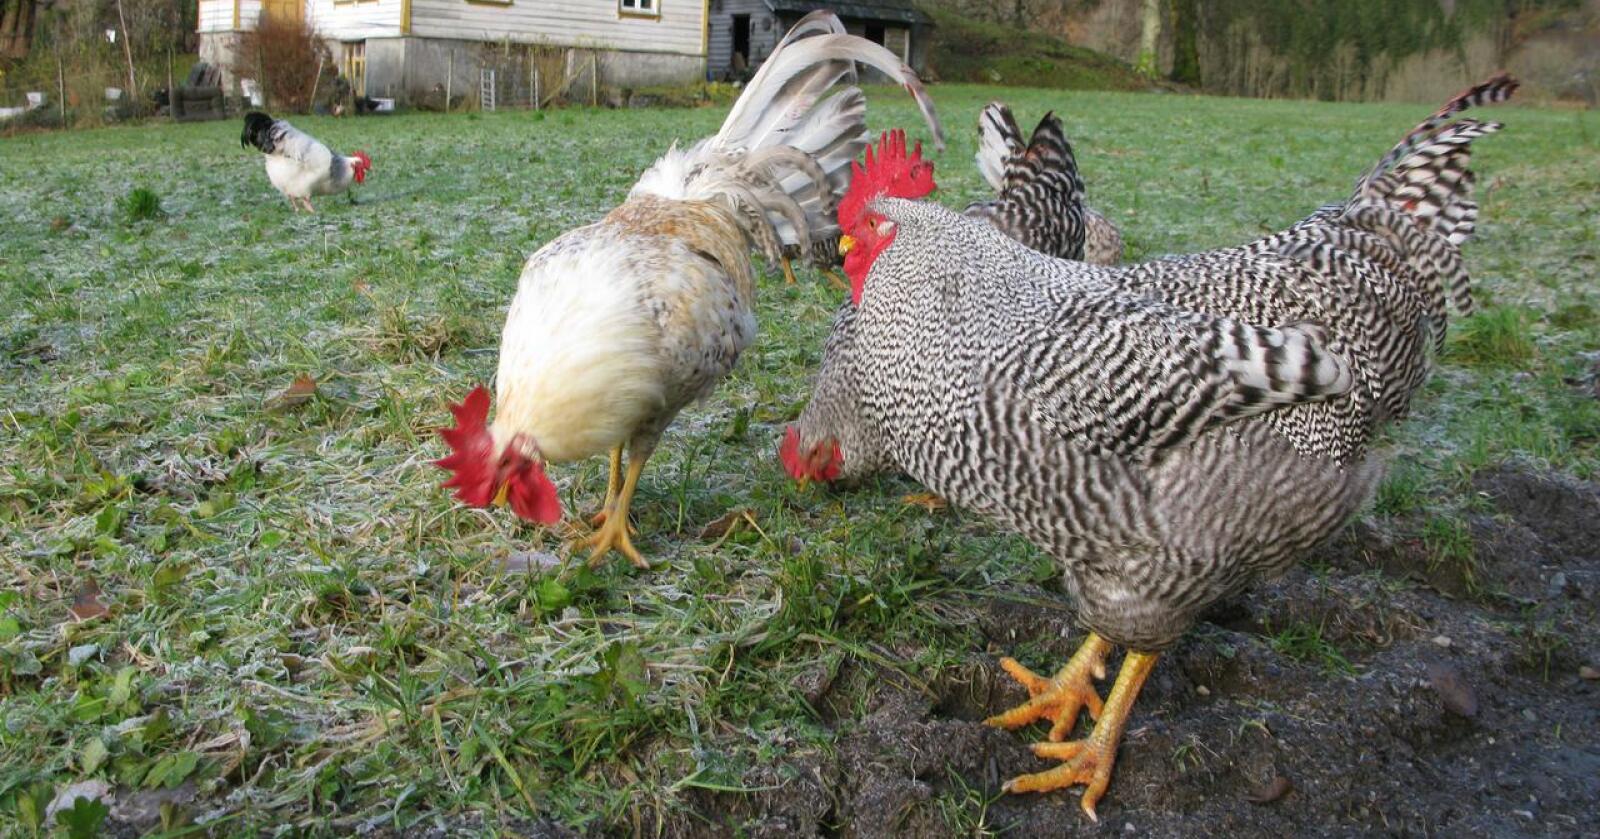 Mange har fått seg høner under pandemien. – Mange ser nok nytten i å kombinere matauken i form av eggene hønene legger, og det faktum at hobbyhøns kan være tamme kjæledyr også, sier Idun Rosenfeld i FK Agri. Foto: Karl Erik Berge